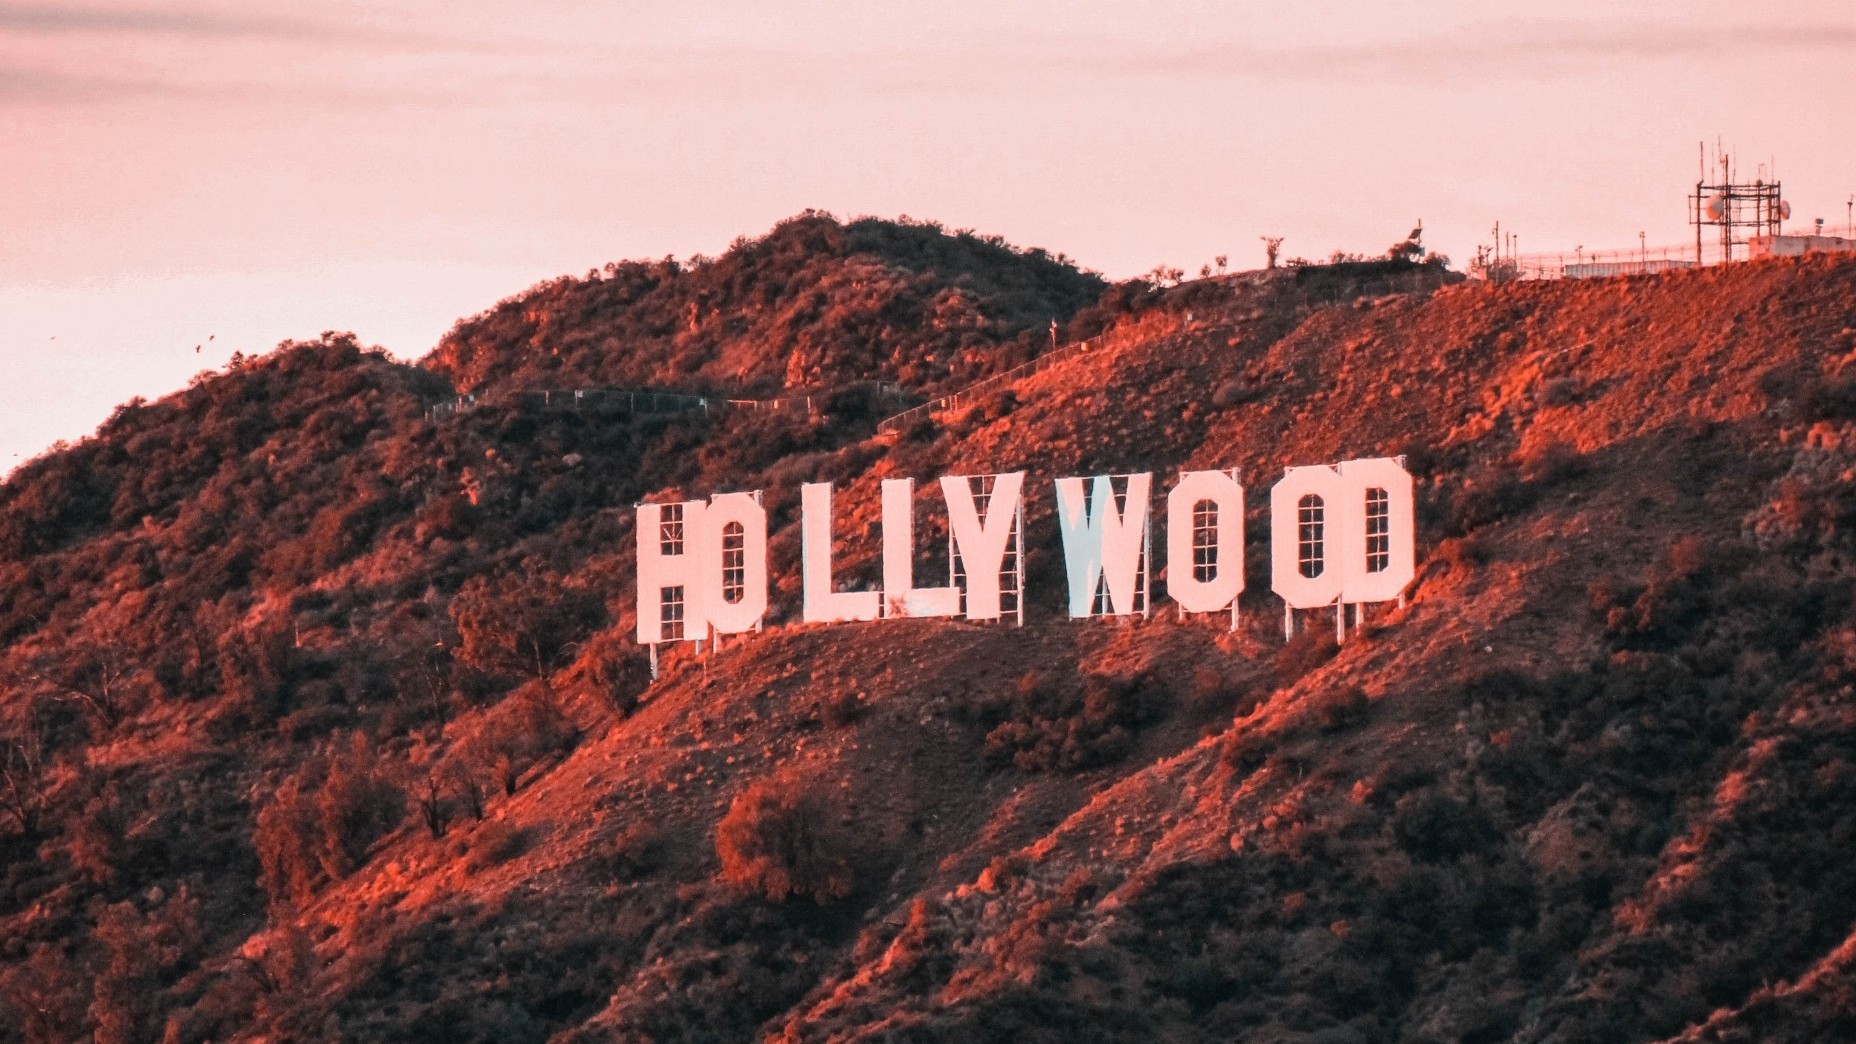 De nos jours les lettres Hollywood sont liées à l'industrie du cinéma mais à l'origine elles étaient destinées à de la publicité pour un lotissement.